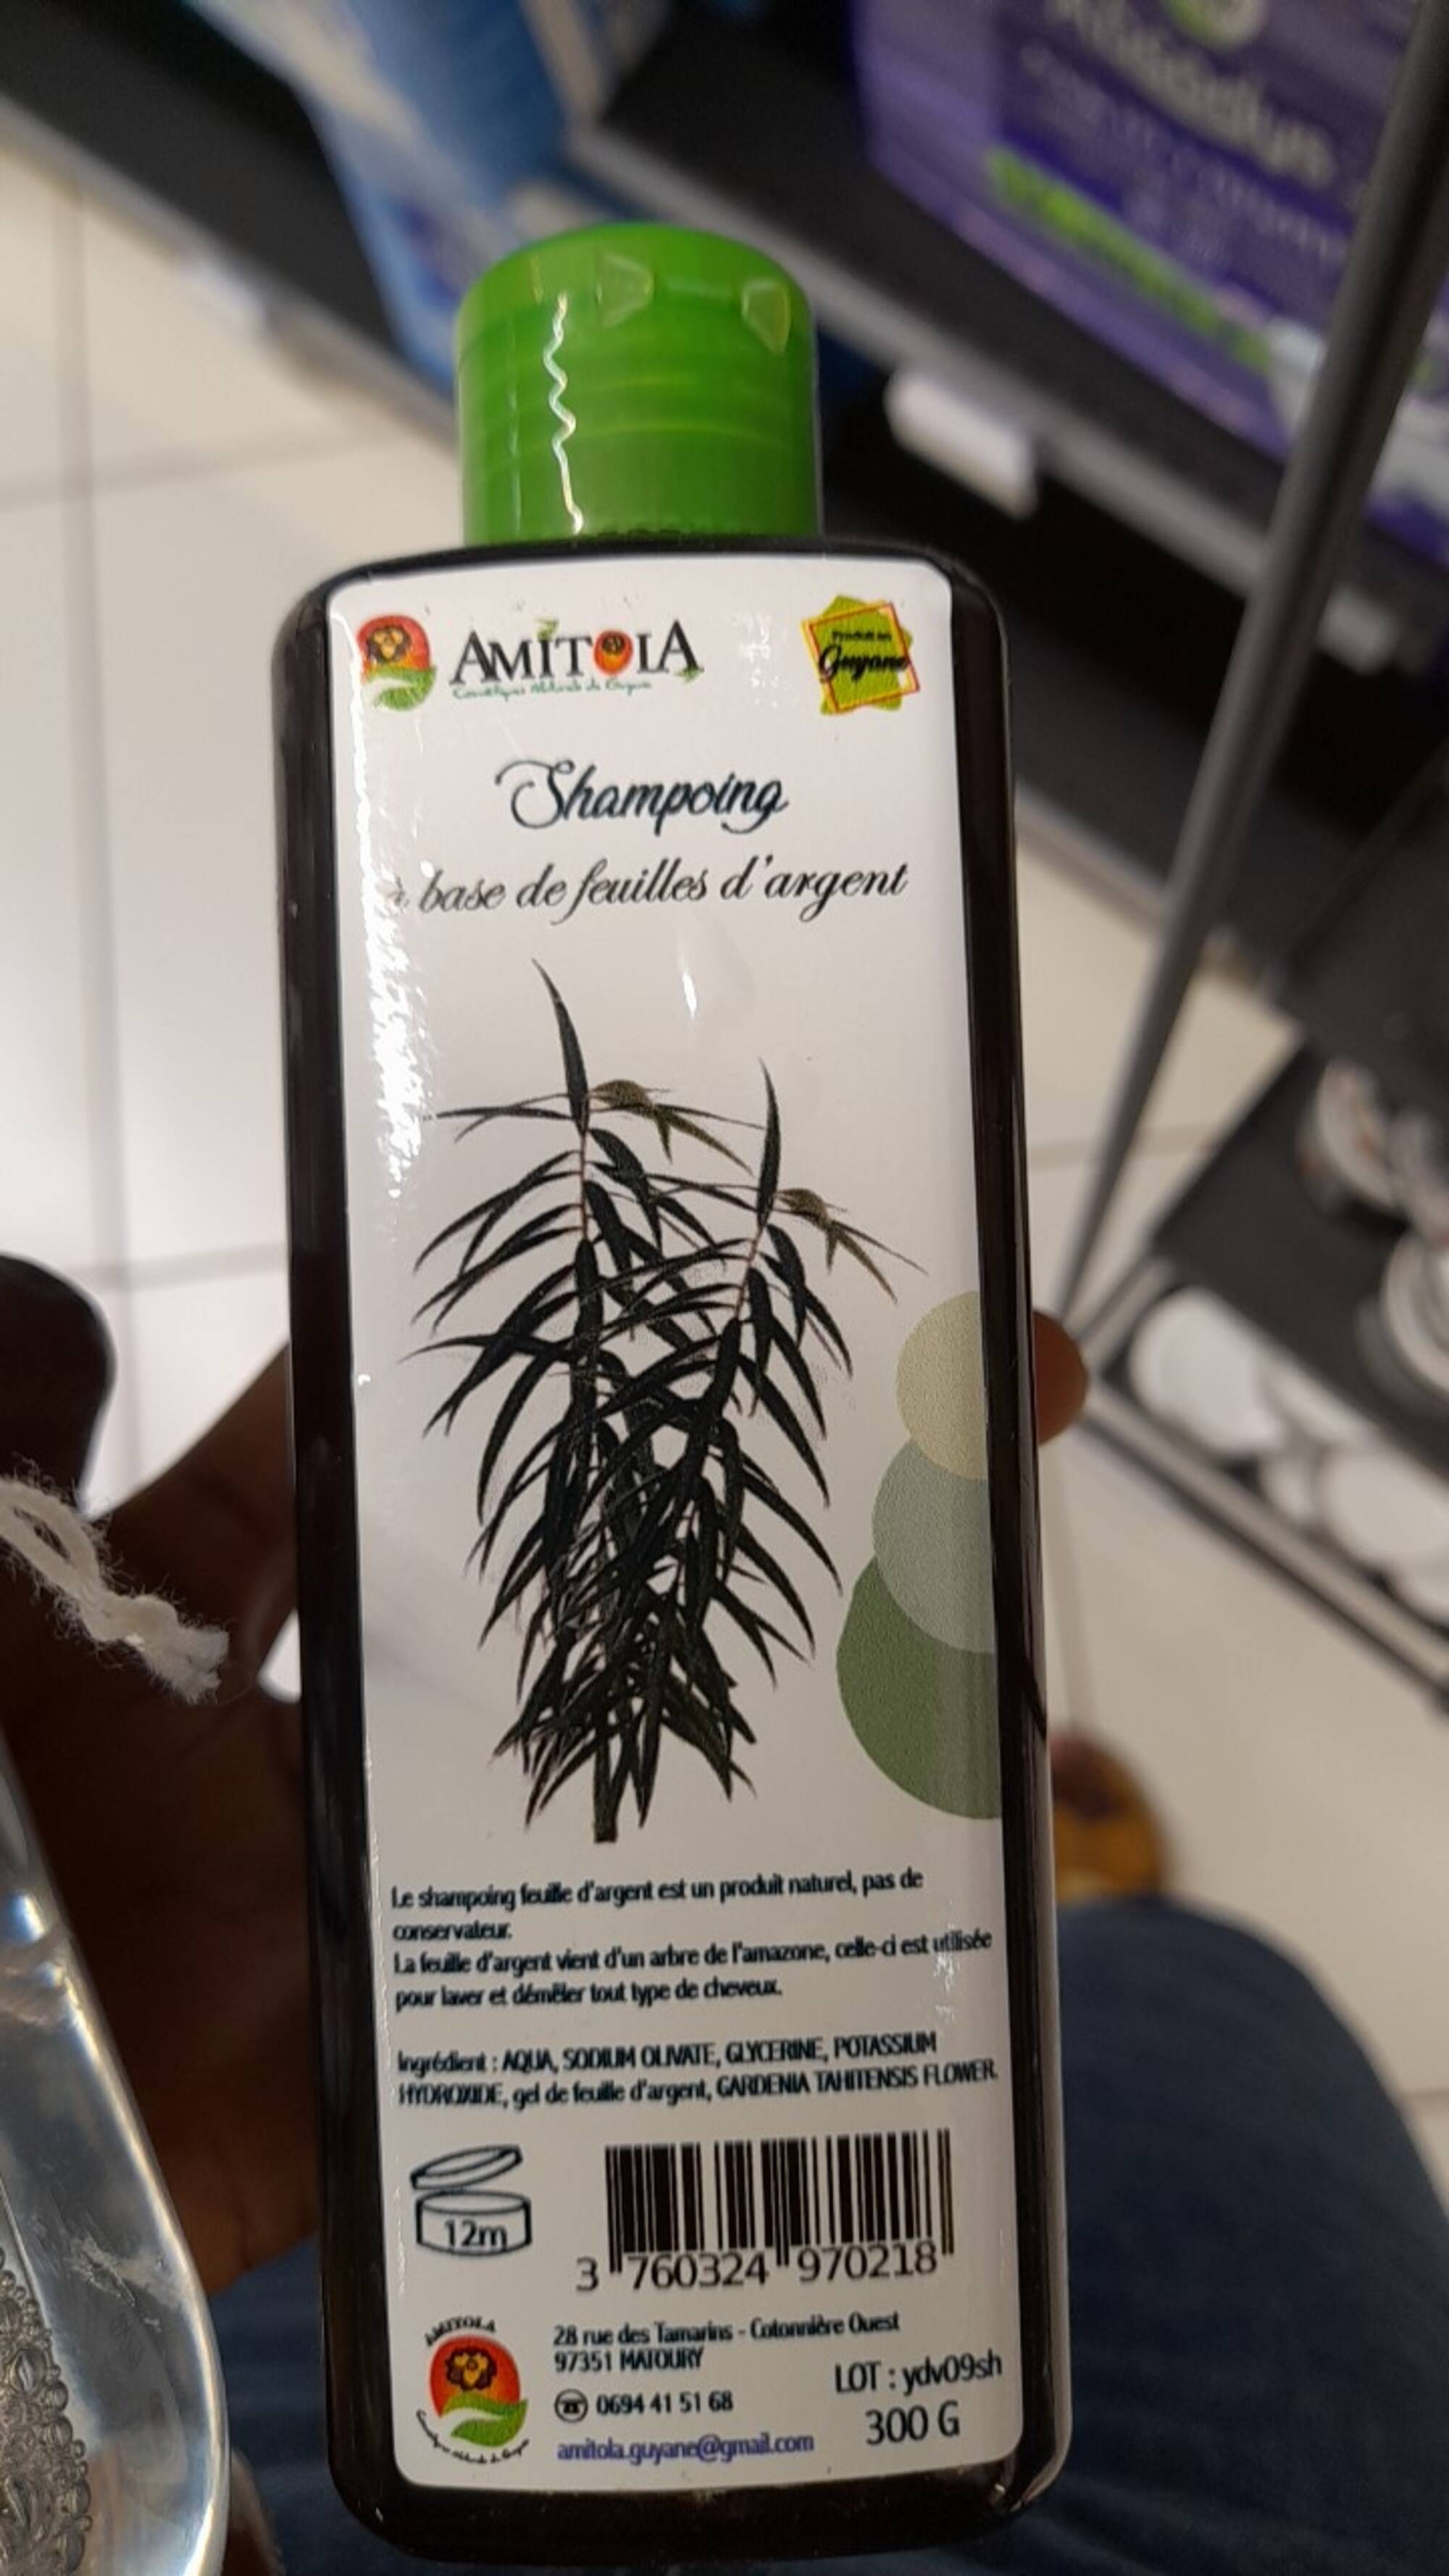 AMITOLA - Shampoing a base de feuilles d'argent